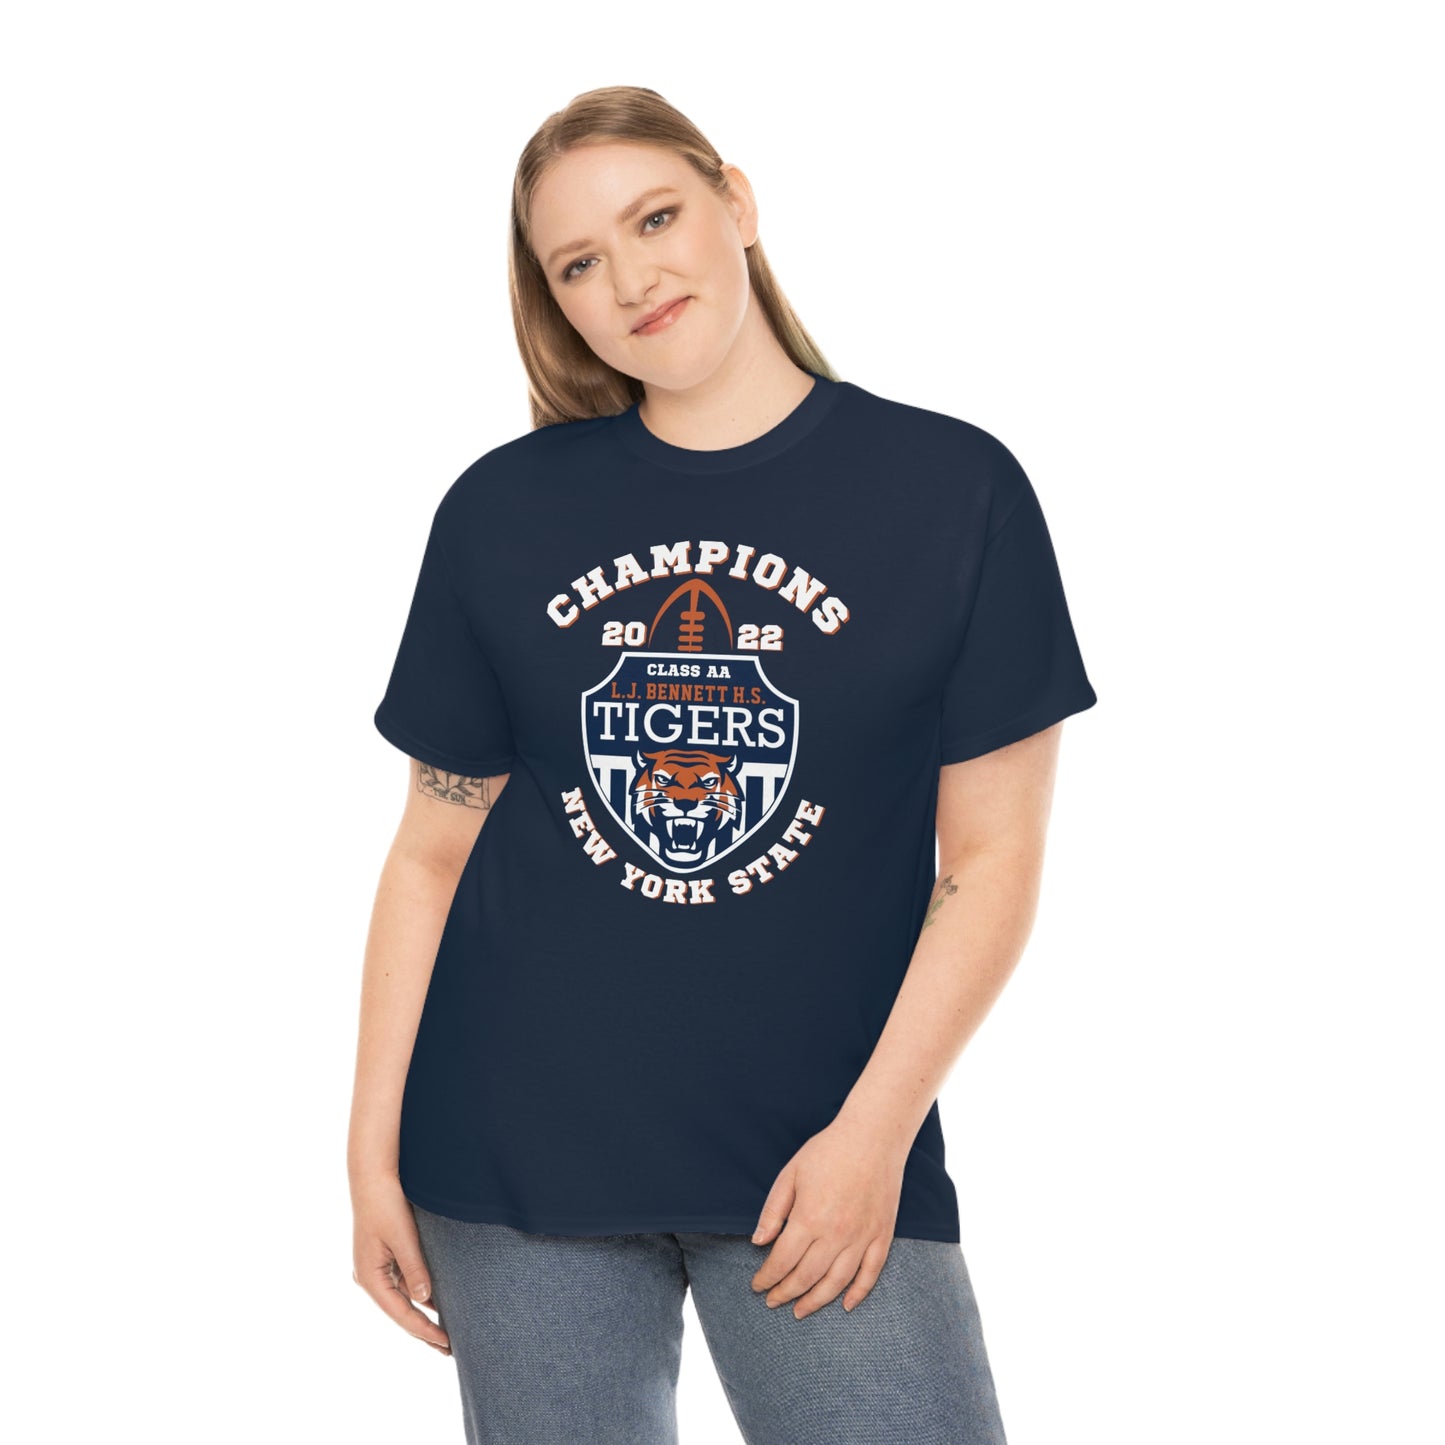 Bennett High School Football Team State Champions T-shirt